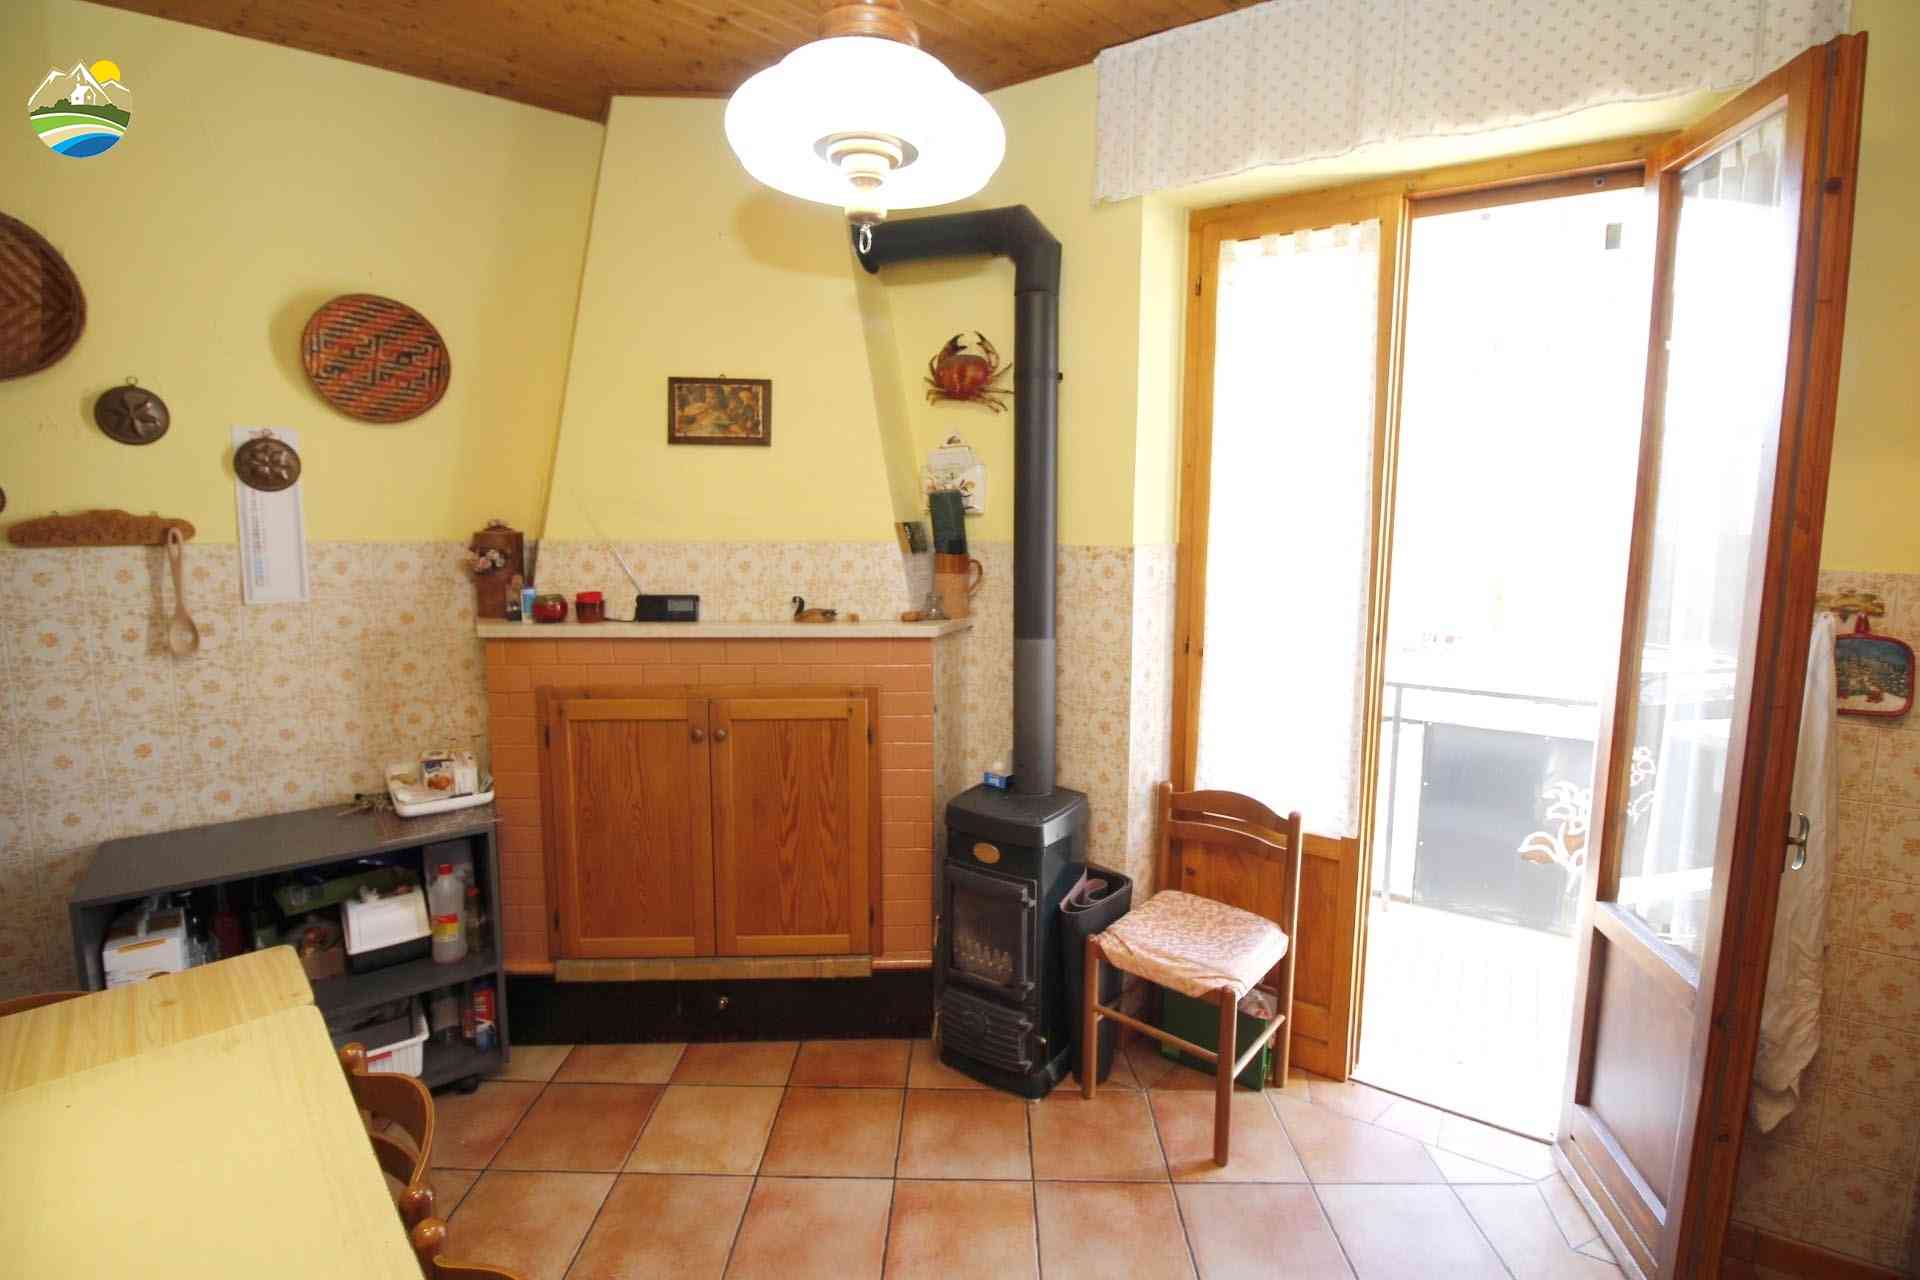 Casa in paese Casa in paese in vendita Elice (PE), Casa Antonella - Elice - EUR 90.531 590